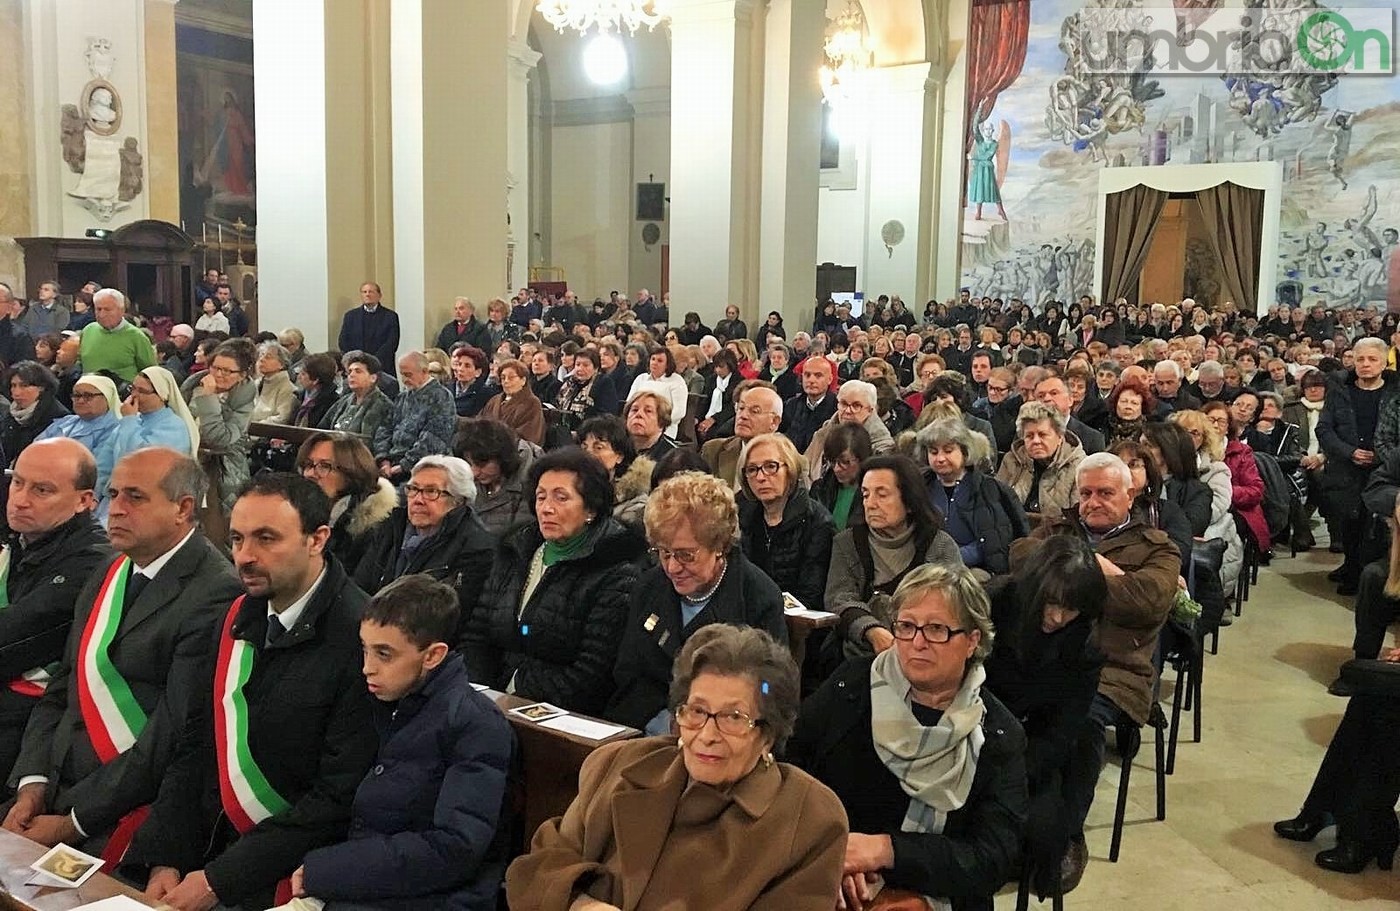 Giubileo misericordia Terni, chiusura Porta Santa - 13 novembre 2016 (1)